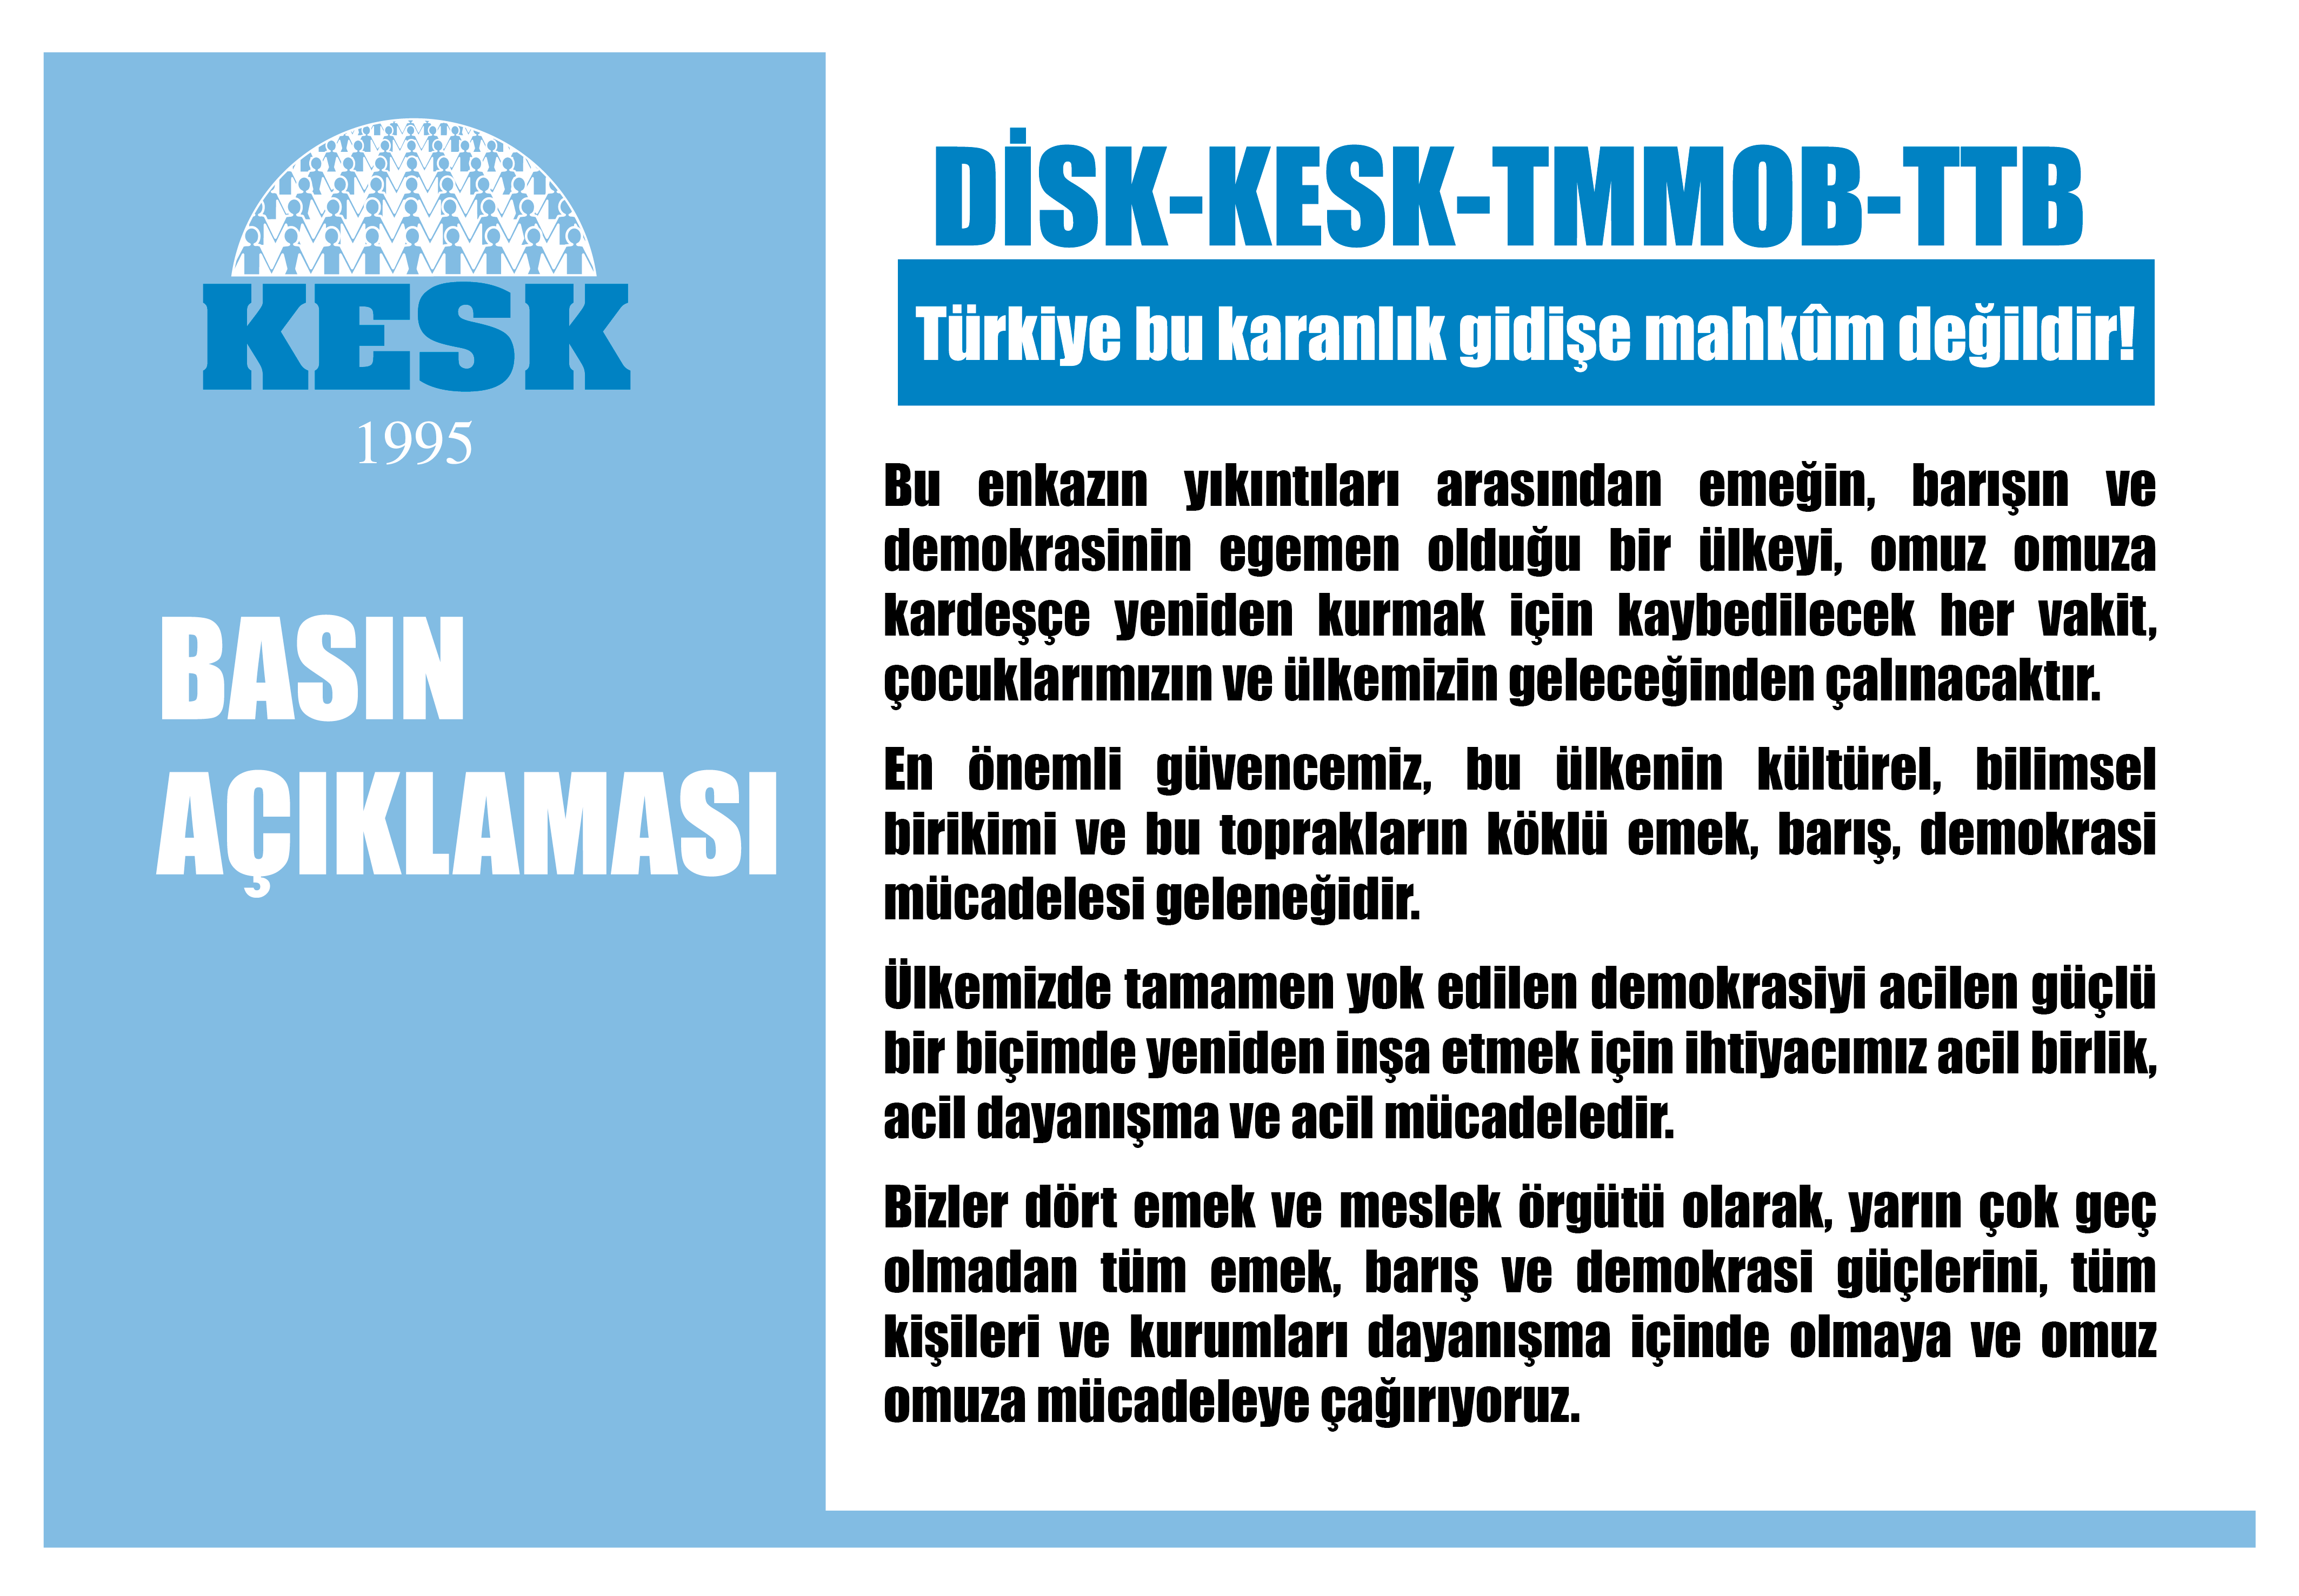 KESK, DİSK, TMMOB, TTB: Türkiye Karanlık Gidişe Mahkum Değildir!